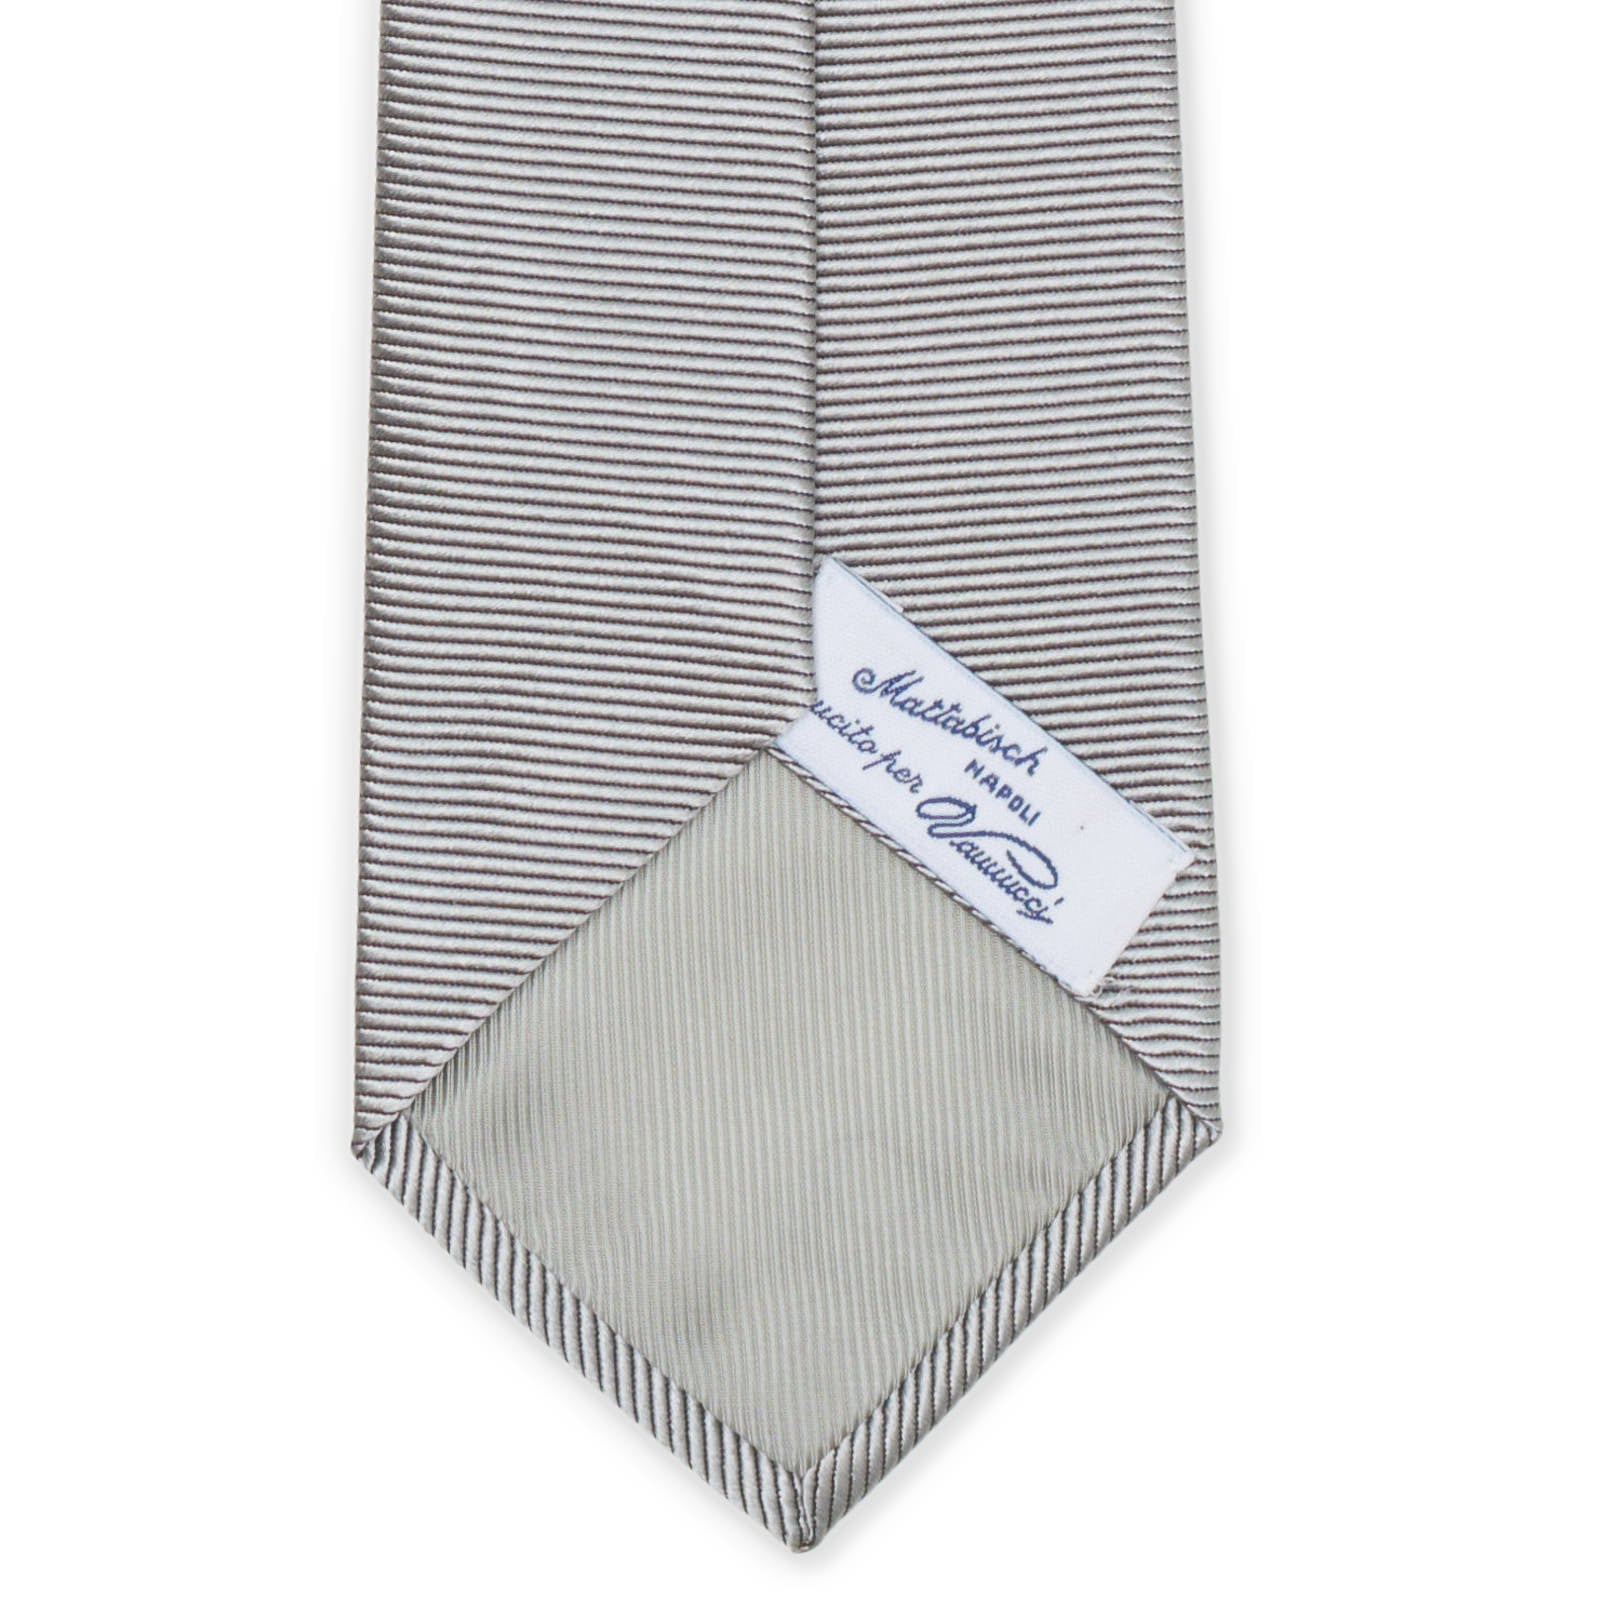 MATTABISCH for VANNUCCI Gray Silk Formal Tie NEW